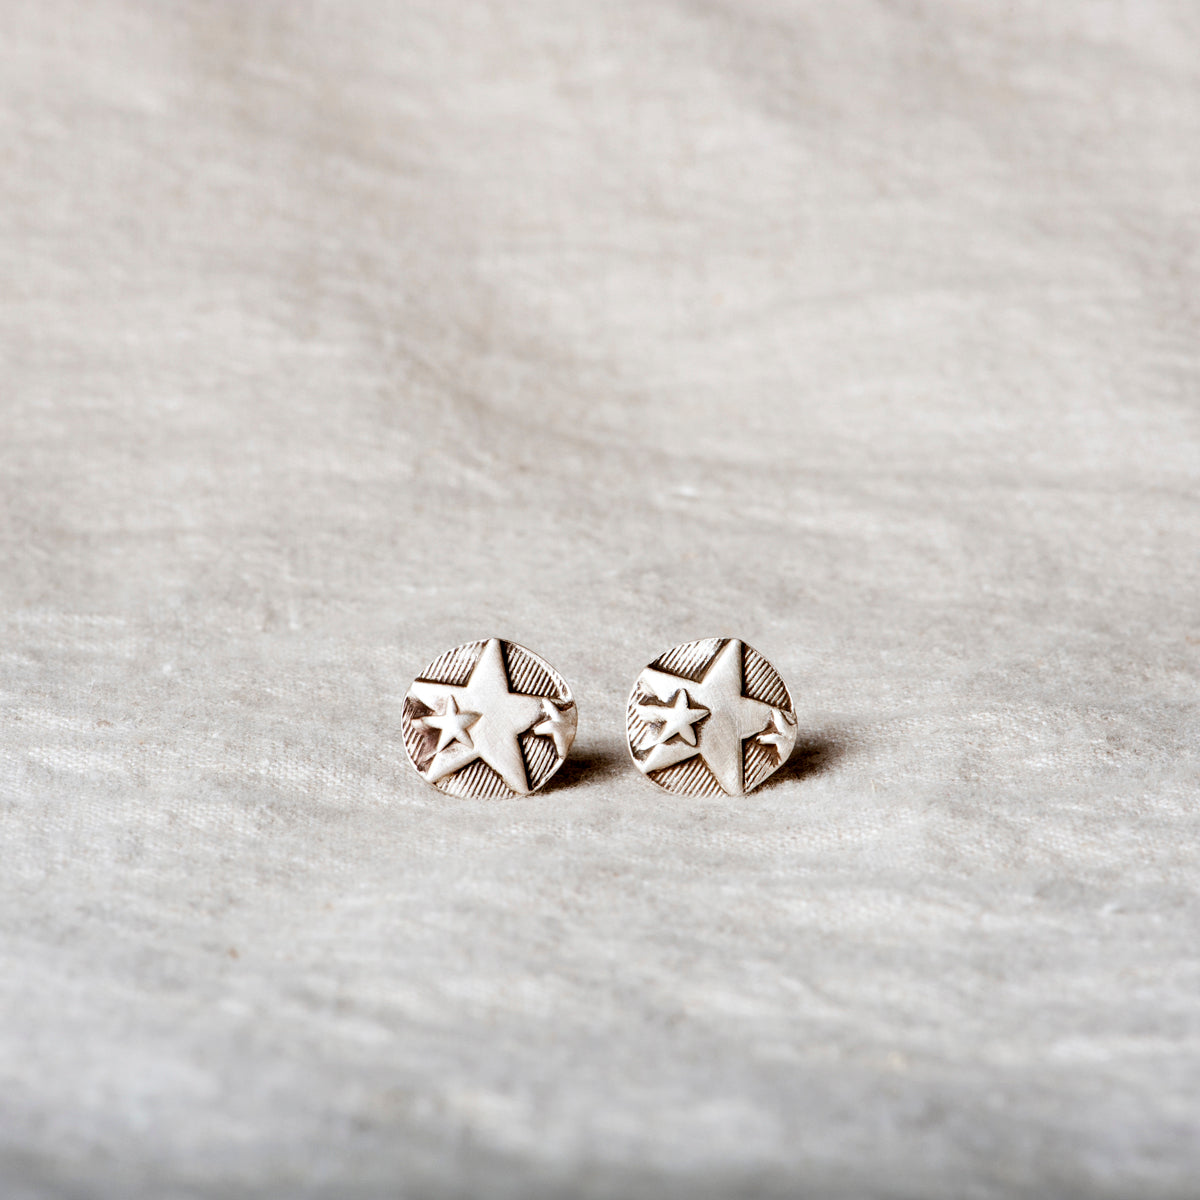 Star Power Silver Stud Earrings by Jester Swink - Jester Swink